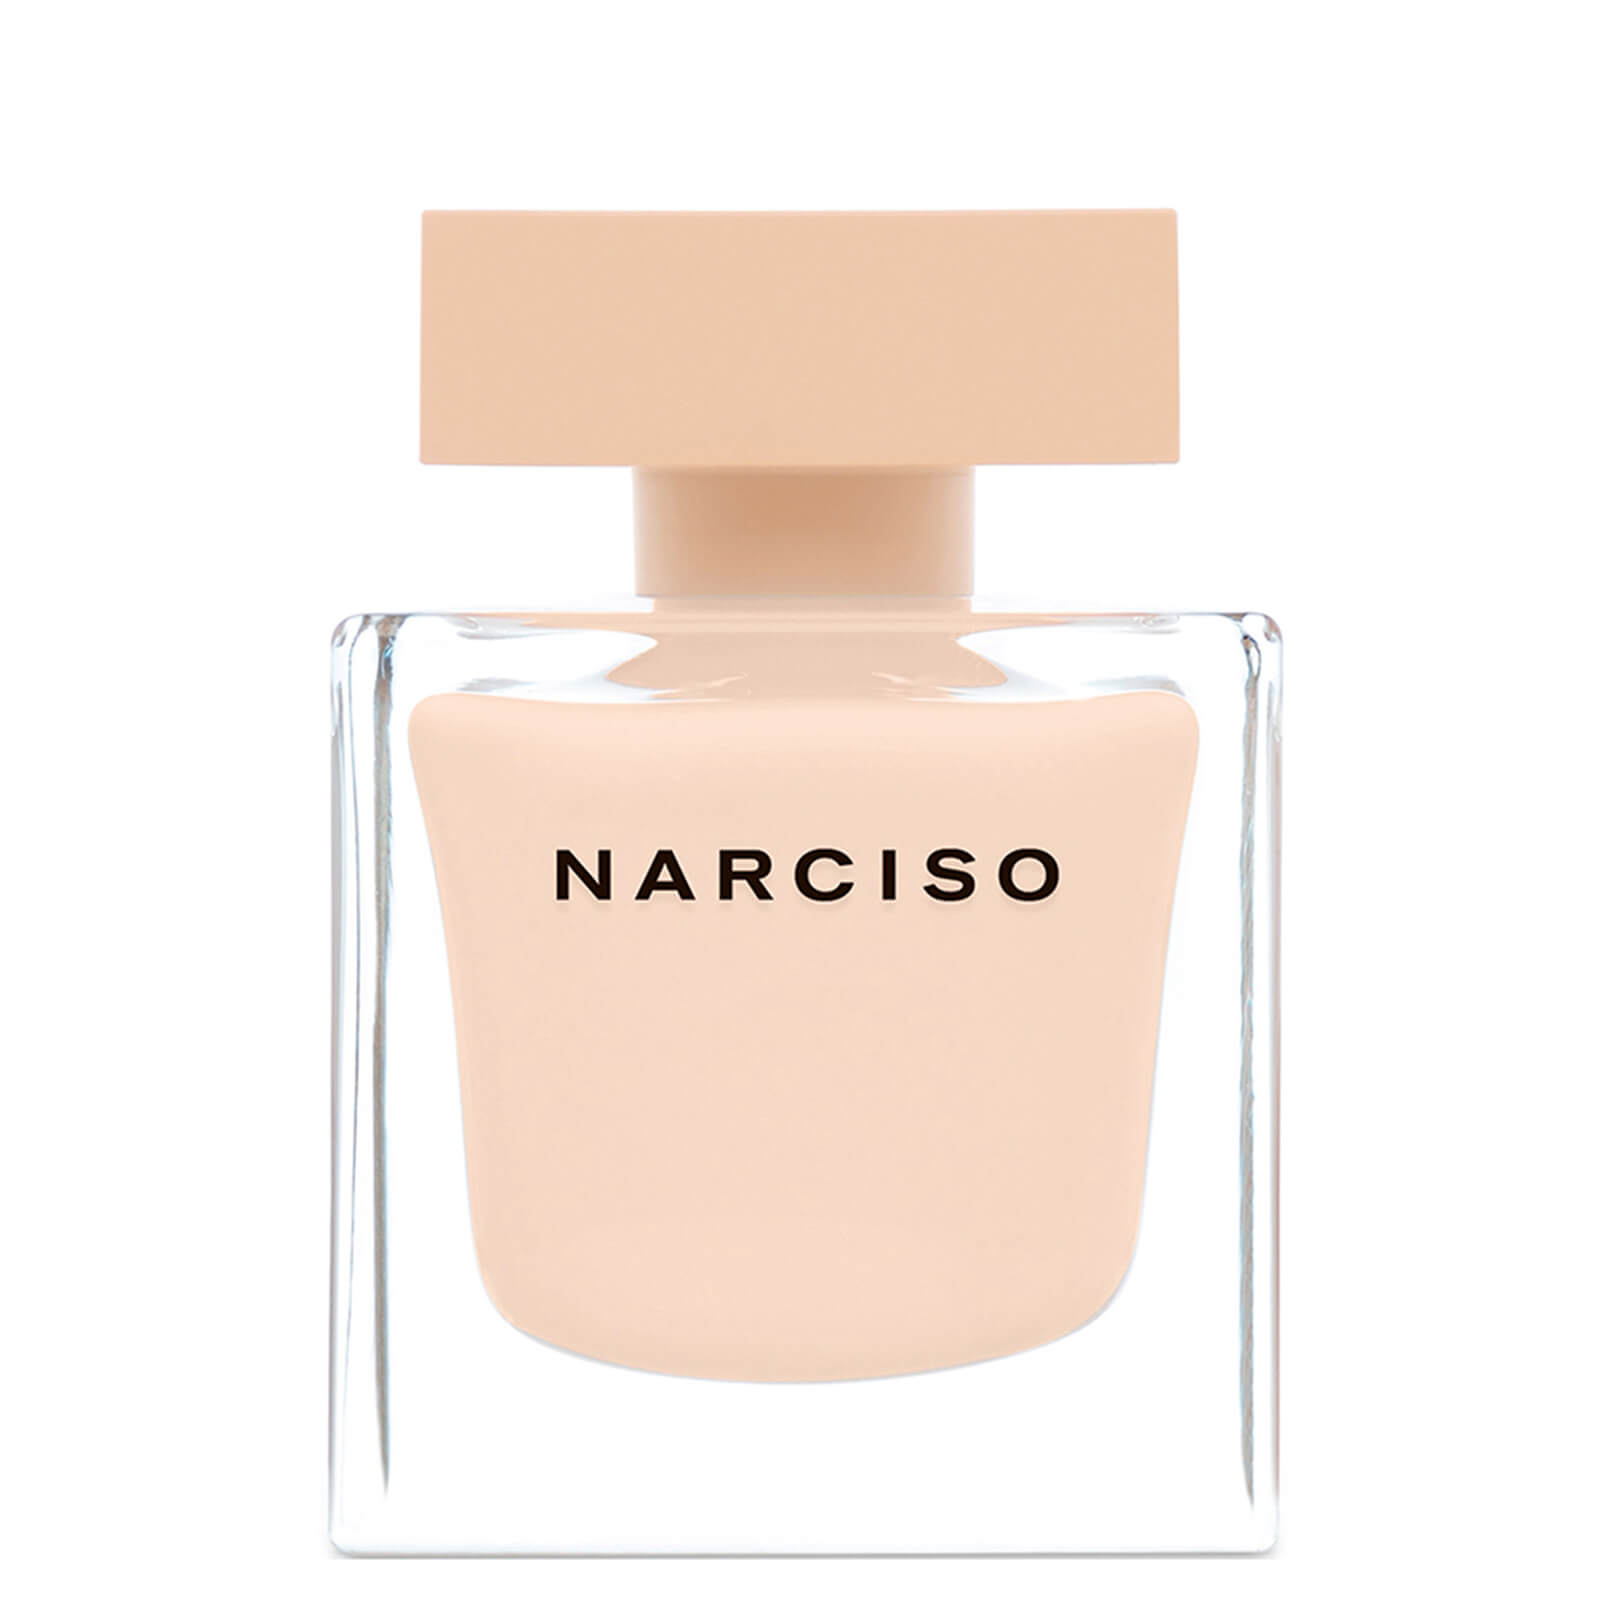 Narciso Rodriguez Narciso Poudrée Eau de Parfum - 90ml